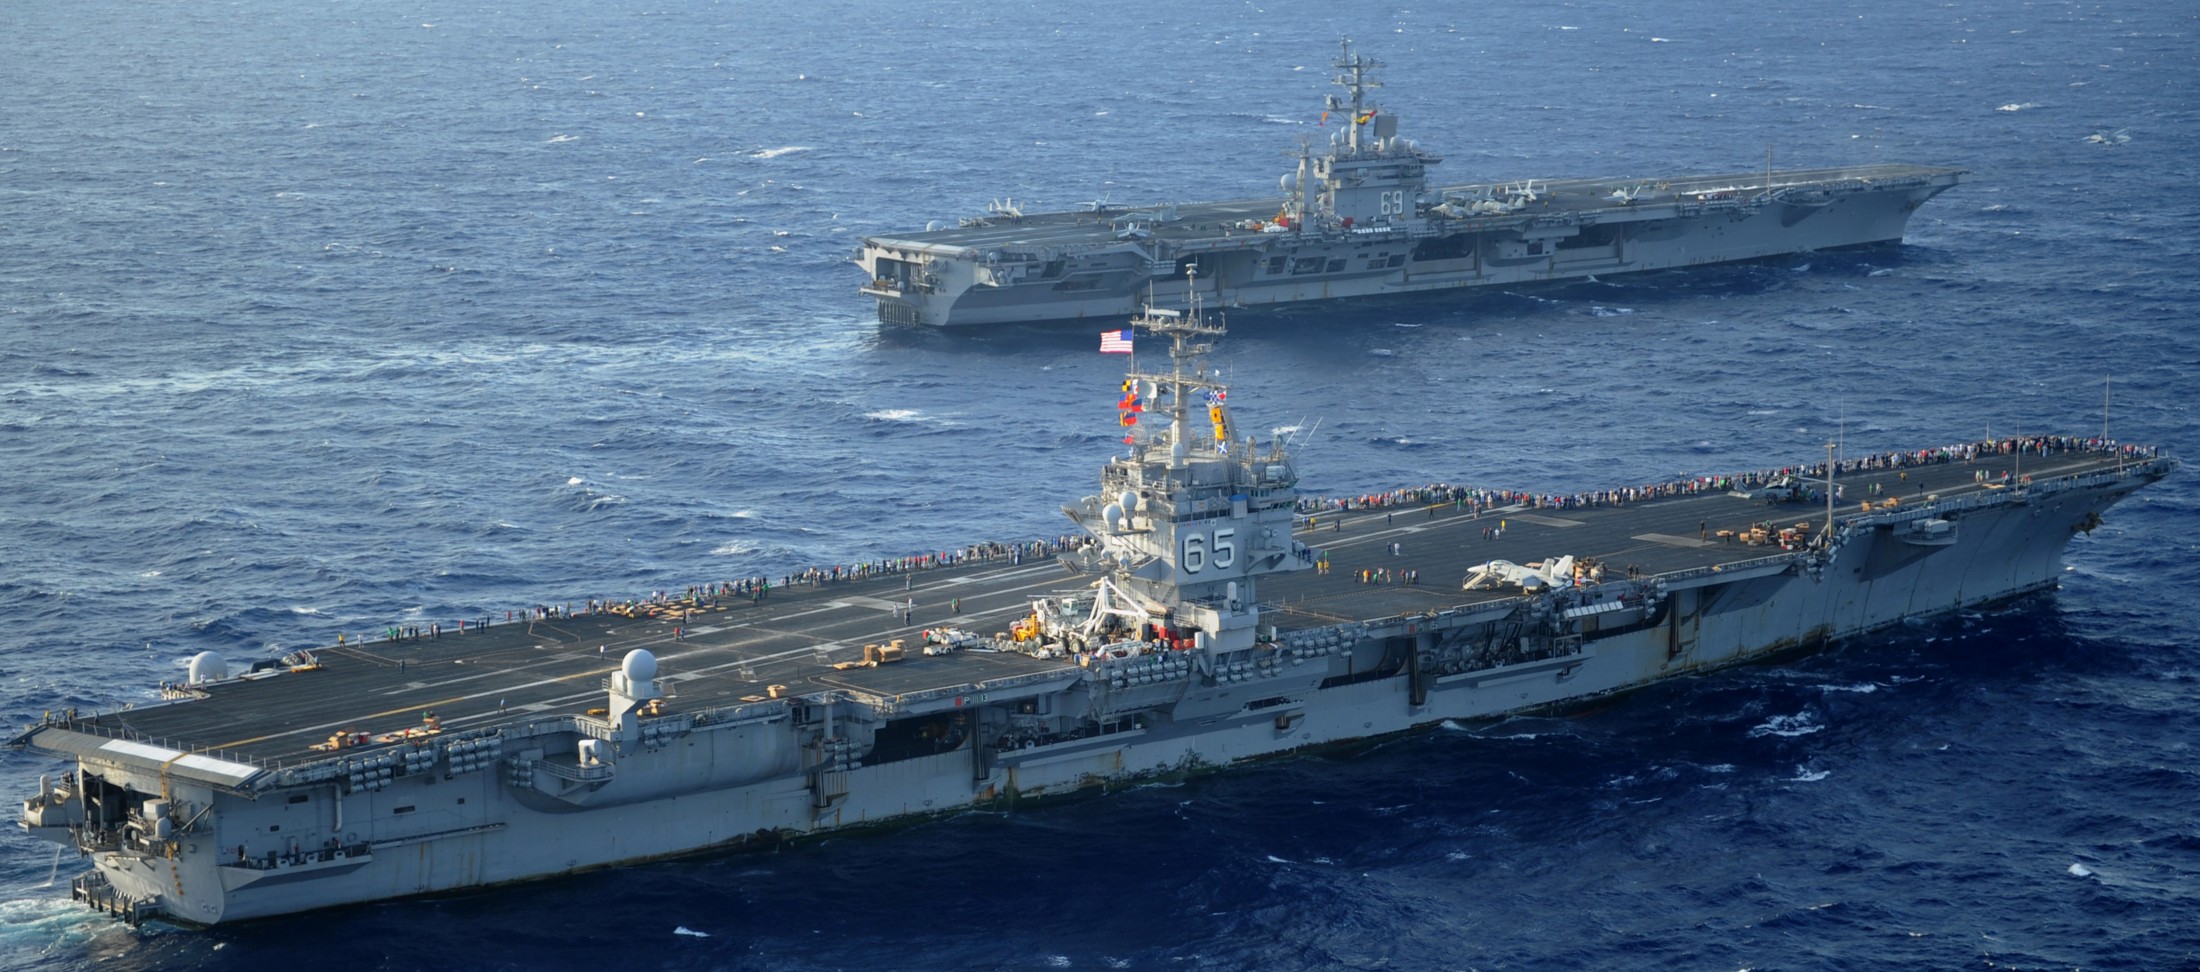 cvn-65 uss enterprise aircraft carrier us navy 18